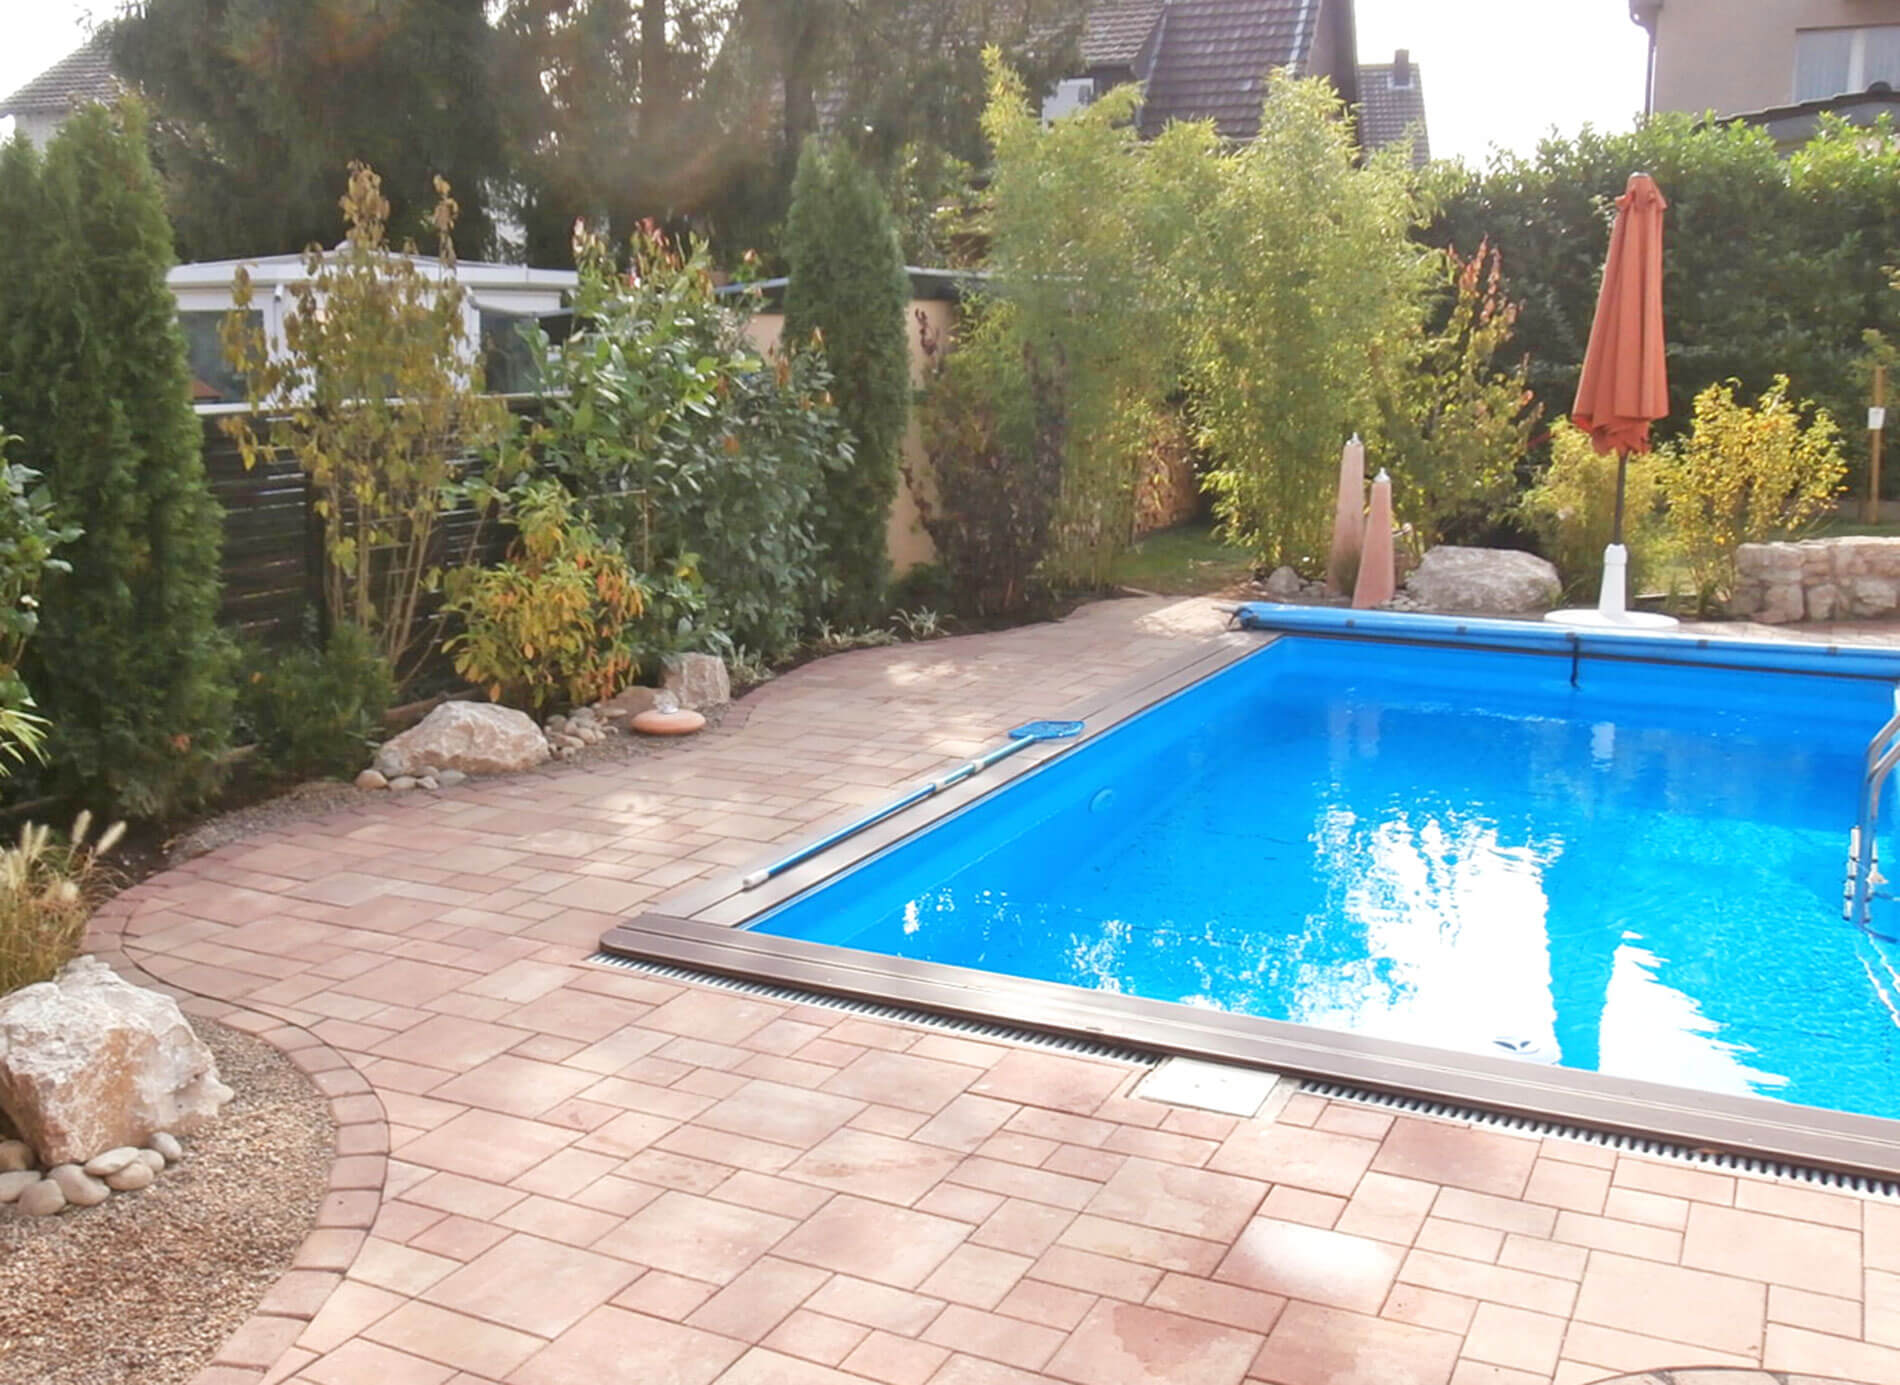 Schwimmbad im Garten mit Pflastersteinen und grüner Umrandung